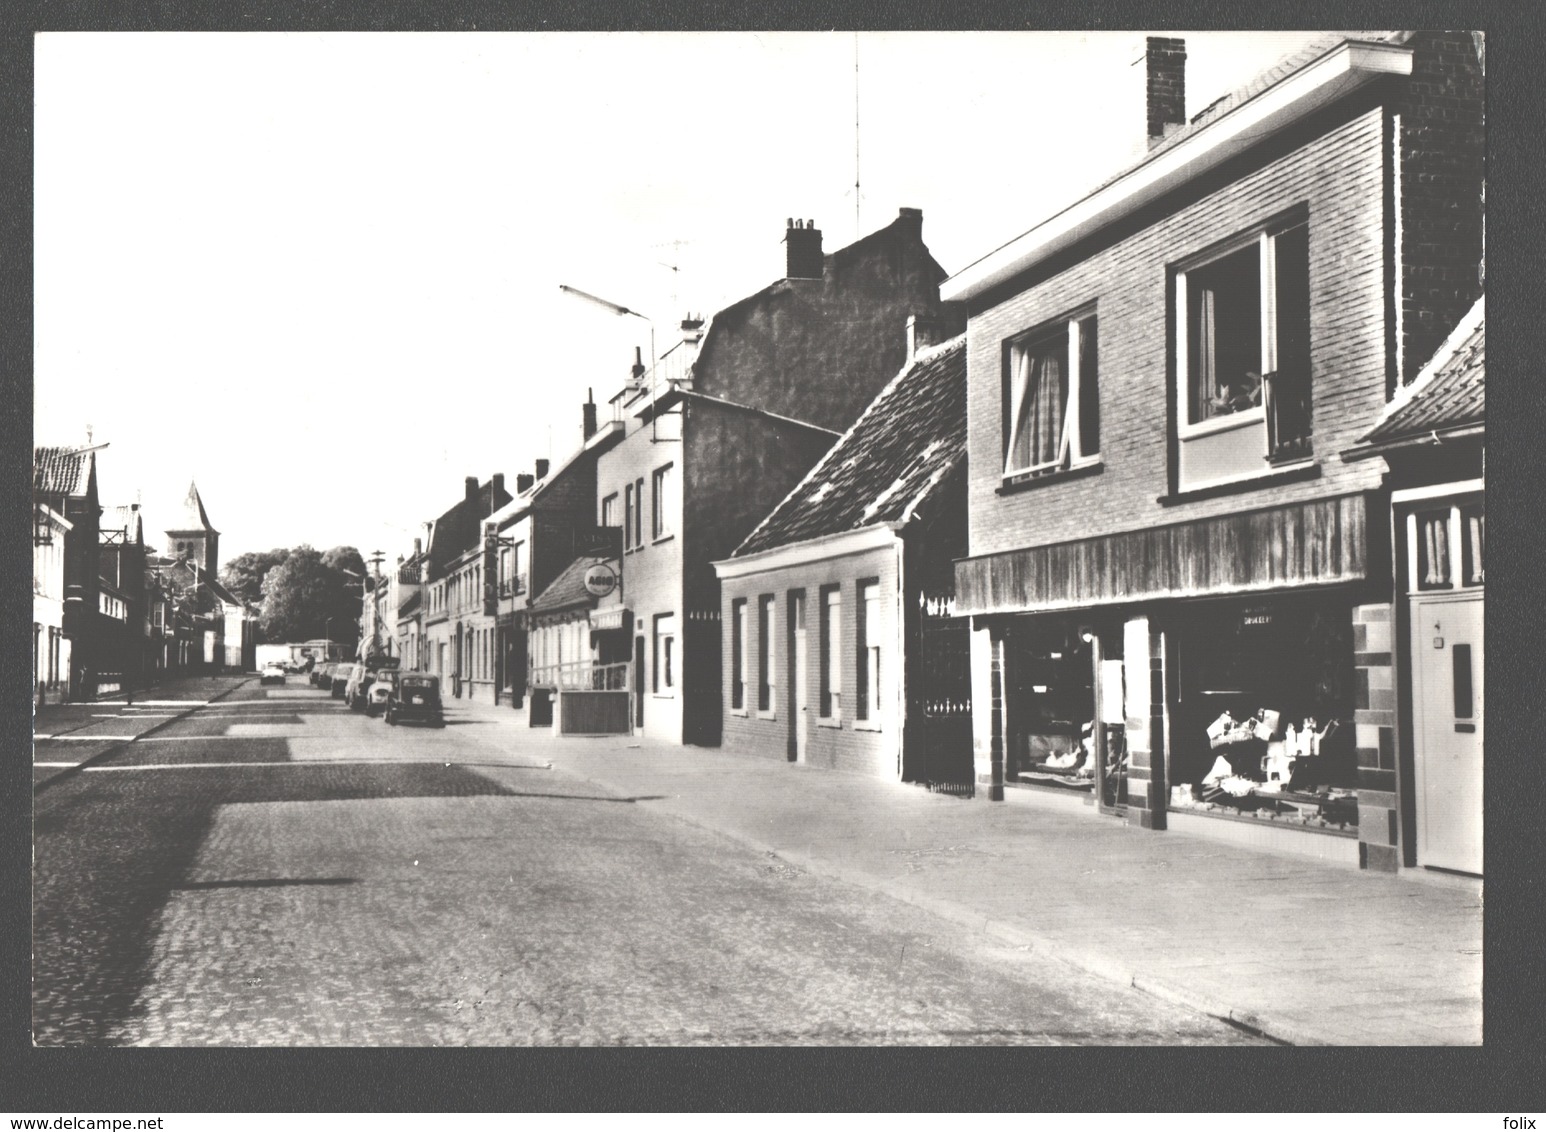 Destelbergen - Dorp - Dendermondsesteenweg - Fotokaart - Nieuwstaat - Vintage Cars / Winkel - Destelbergen